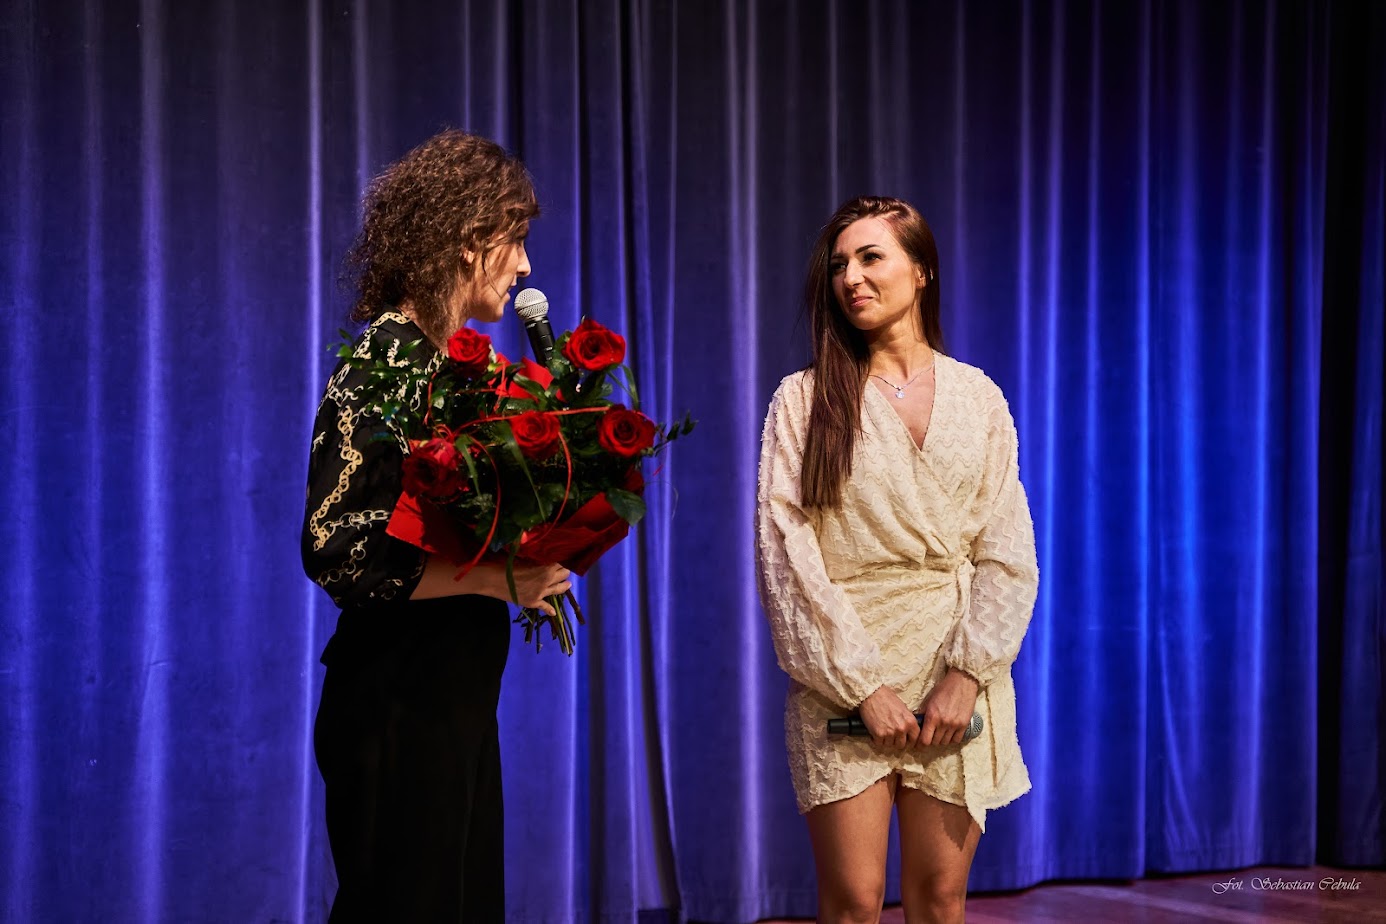 na scenie stoją dwie kobiety jedna trzyma bukiet czerwonych róż